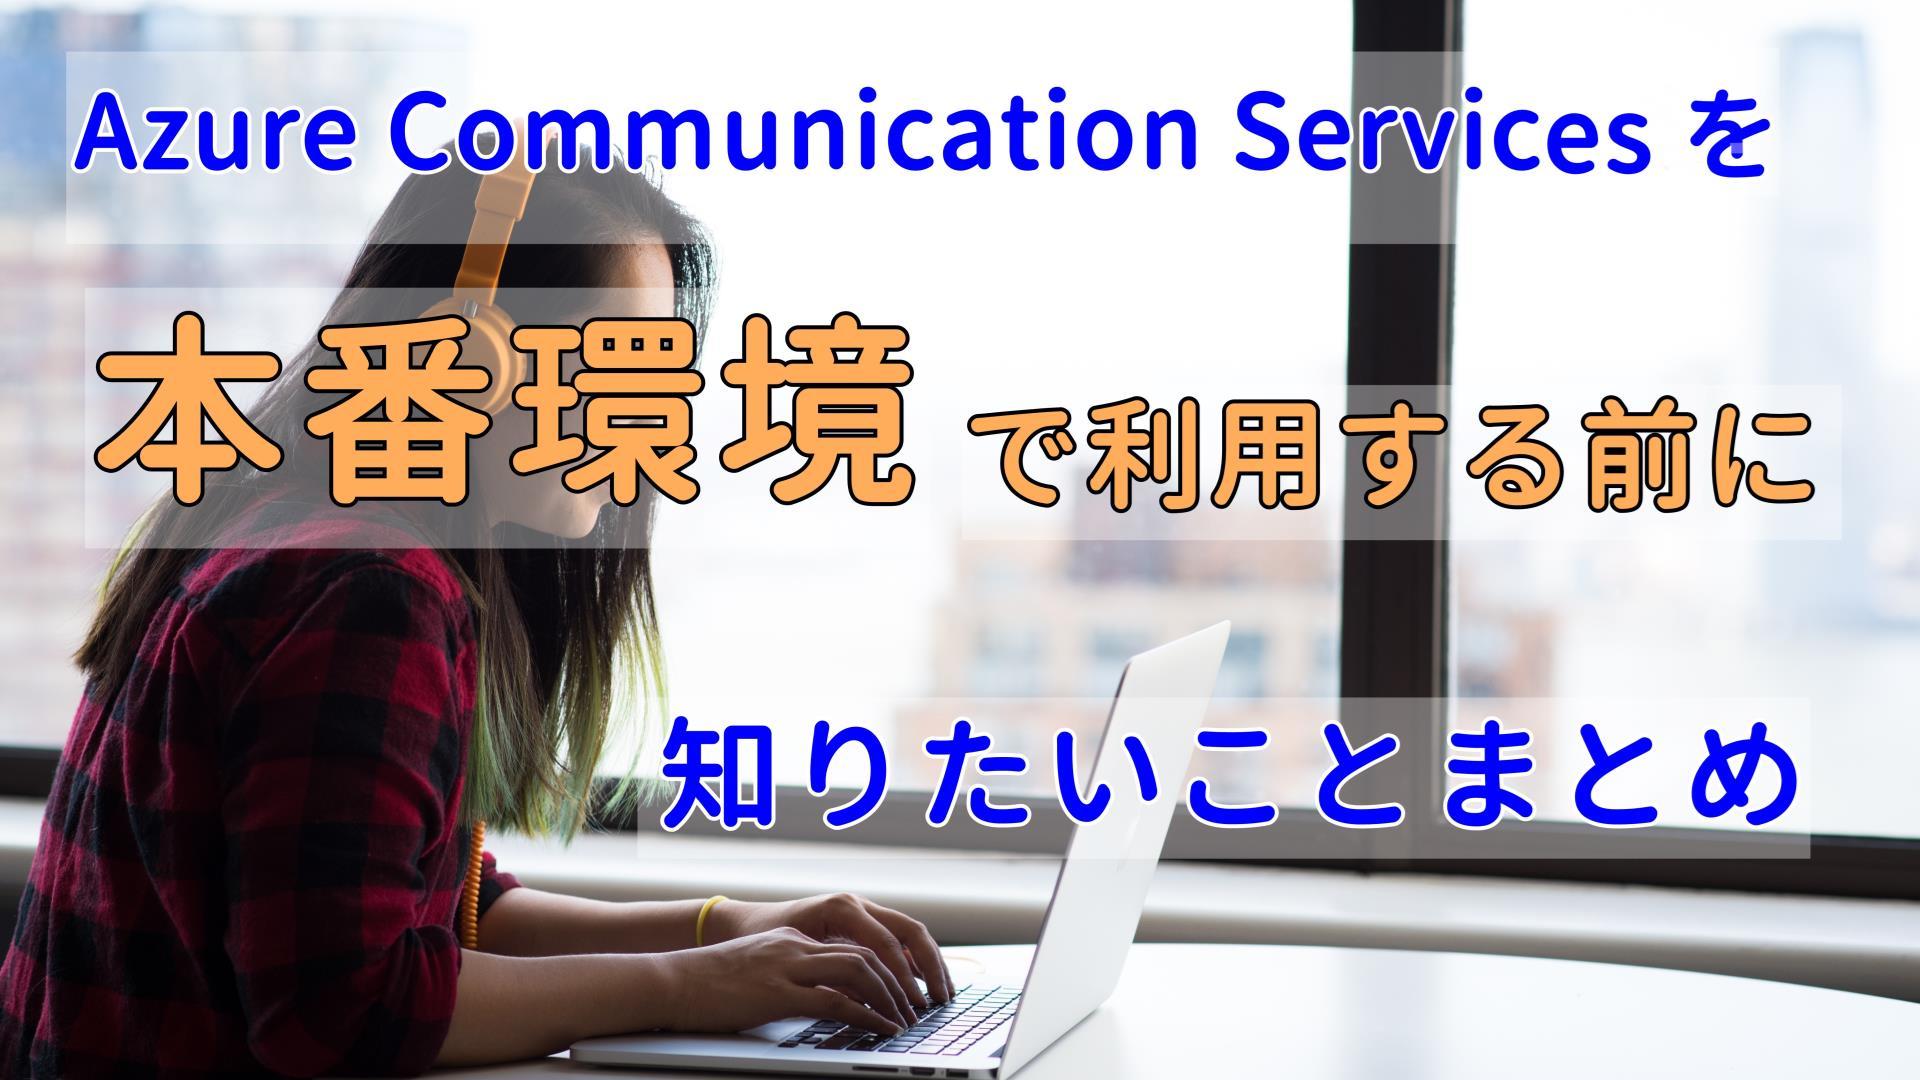 Azure Communication Services を本番環境で利用する前に知りたいことまとめ